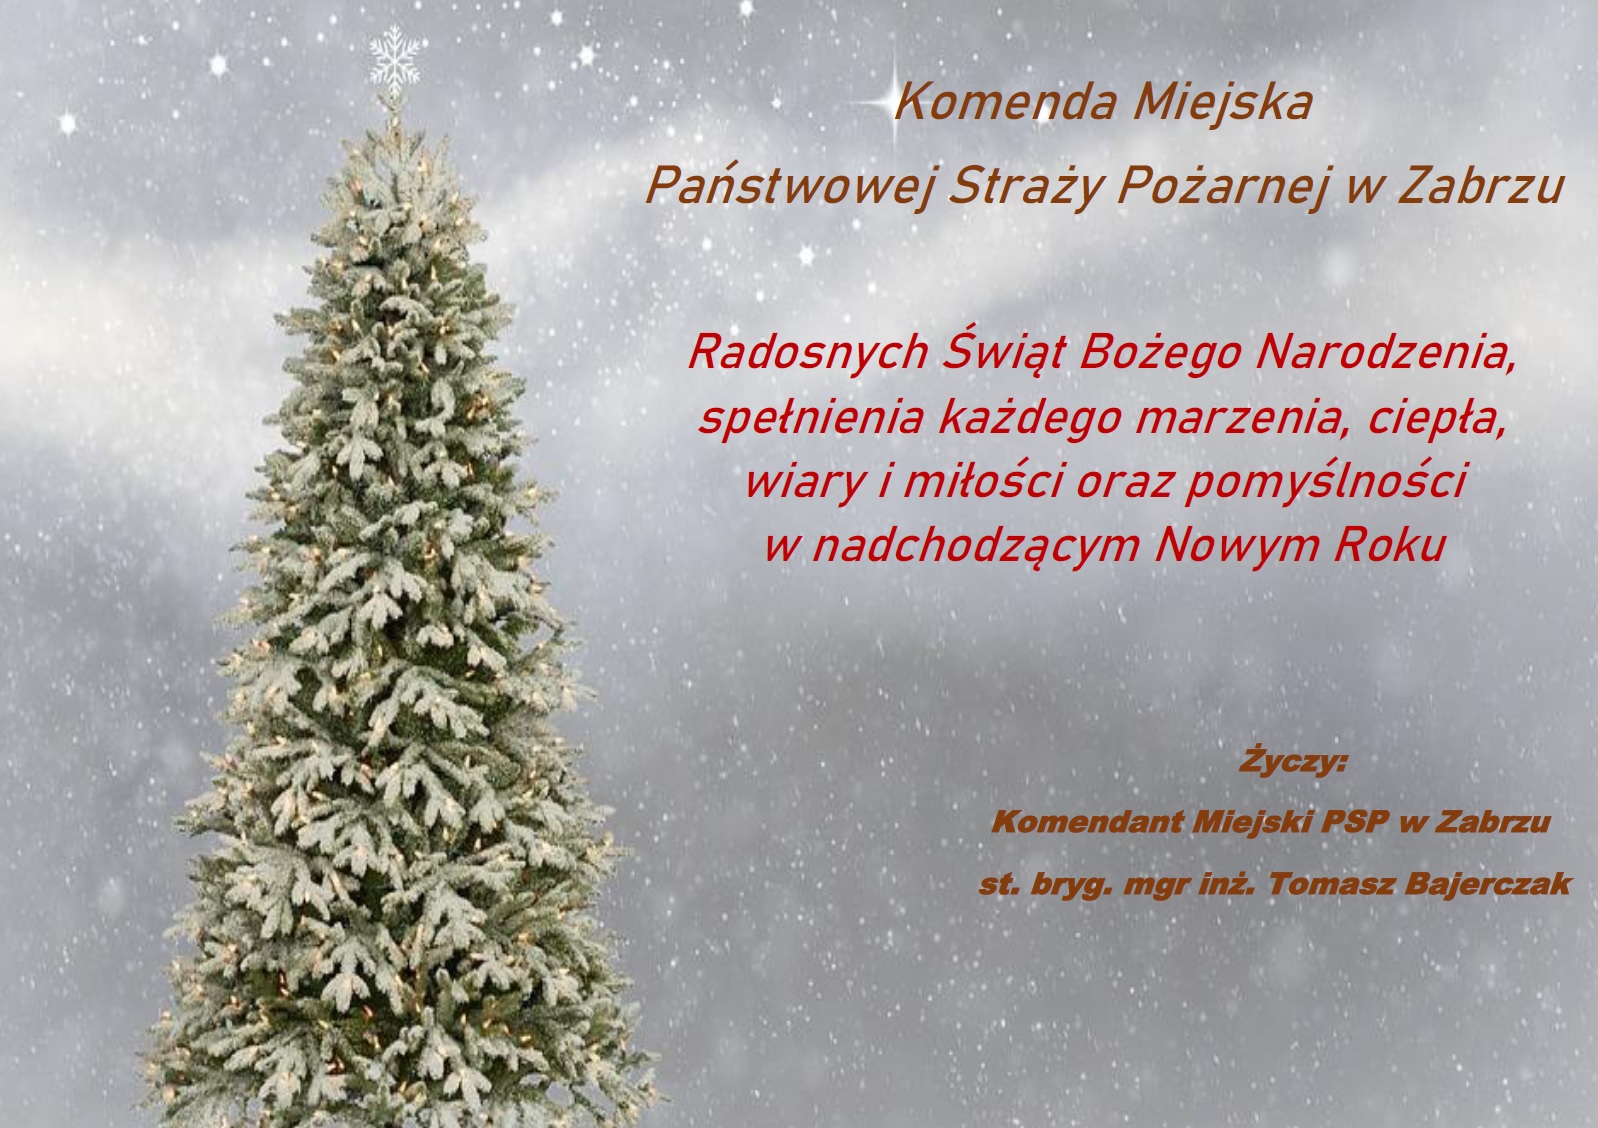 Życzenia świąteczne Komendanta Miejskiego PSP w Zabrzu